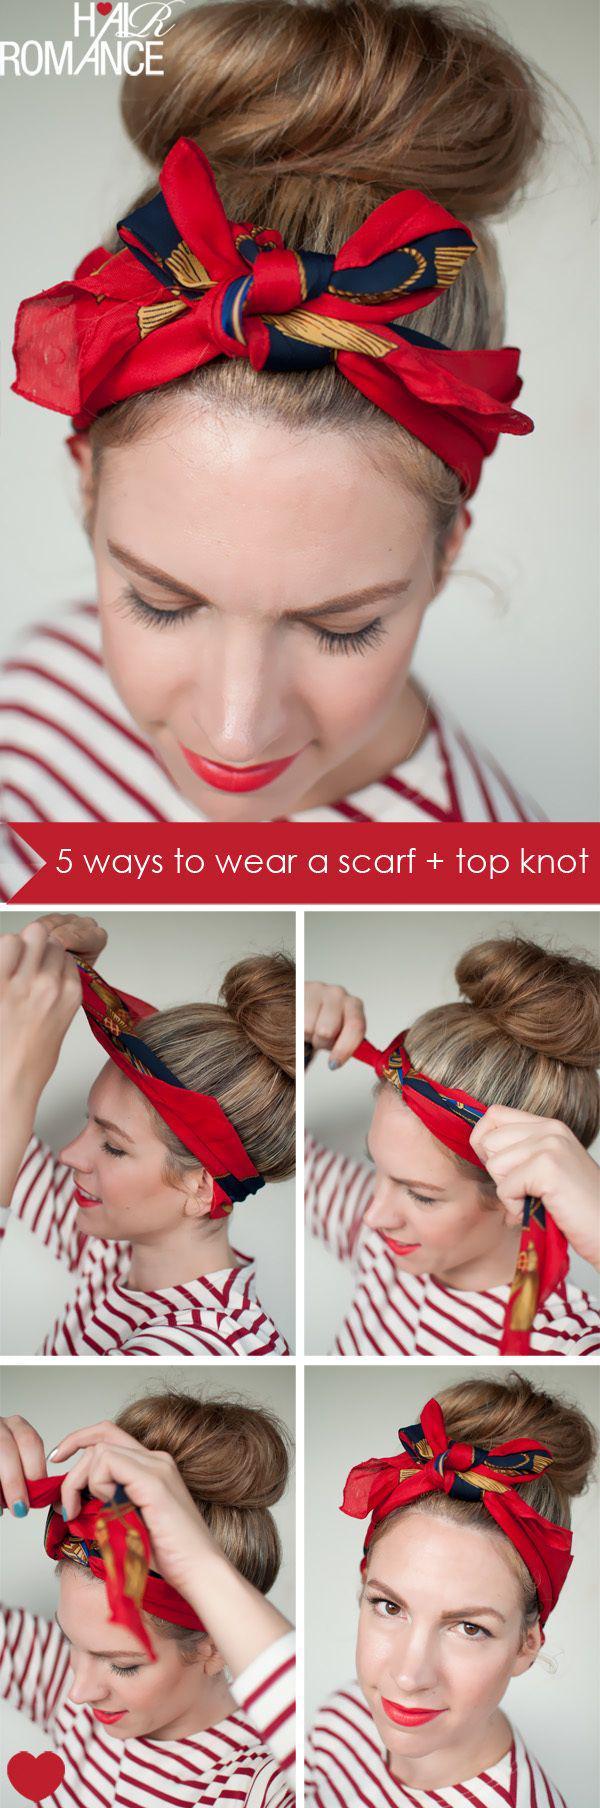 รูปภาพ:http://hairromance-3df0.kxcdn.com/wp-content/uploads/2012/04/5-ways-scarf-top-knot-hairstyle-bow-headband-tutorial.jpg